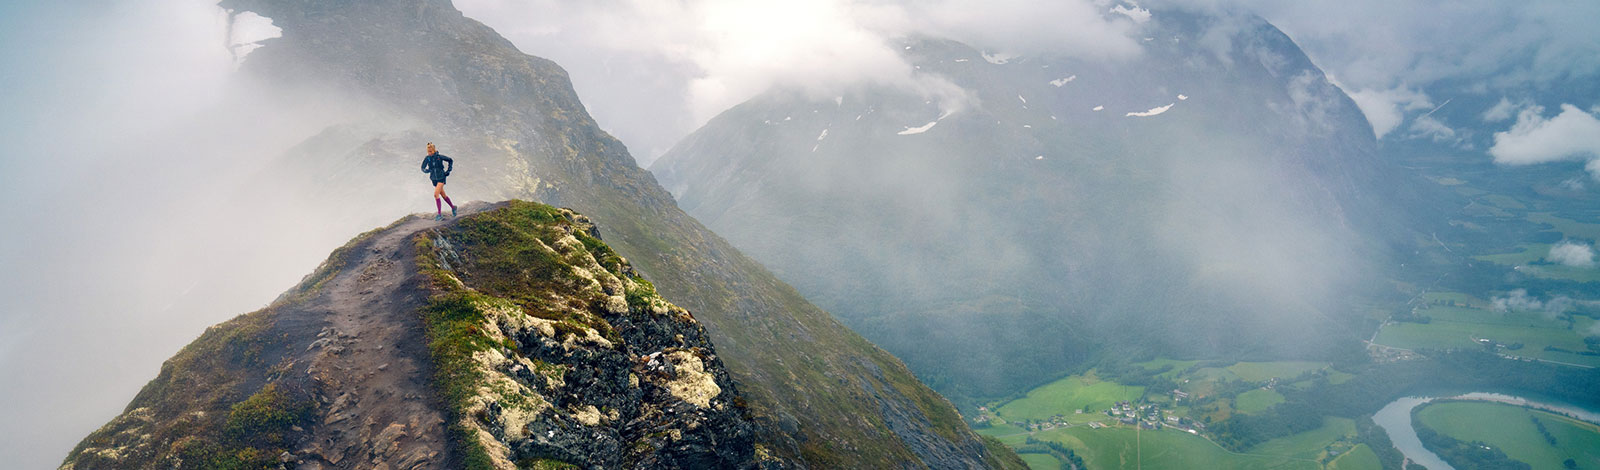 Il paesaggio di montagna magro a sinistra significa che una donna corre su uno stretto sentiero di montagna vicino alla cima a destra, la valle può essere vista con un piccolo posto e un fiume